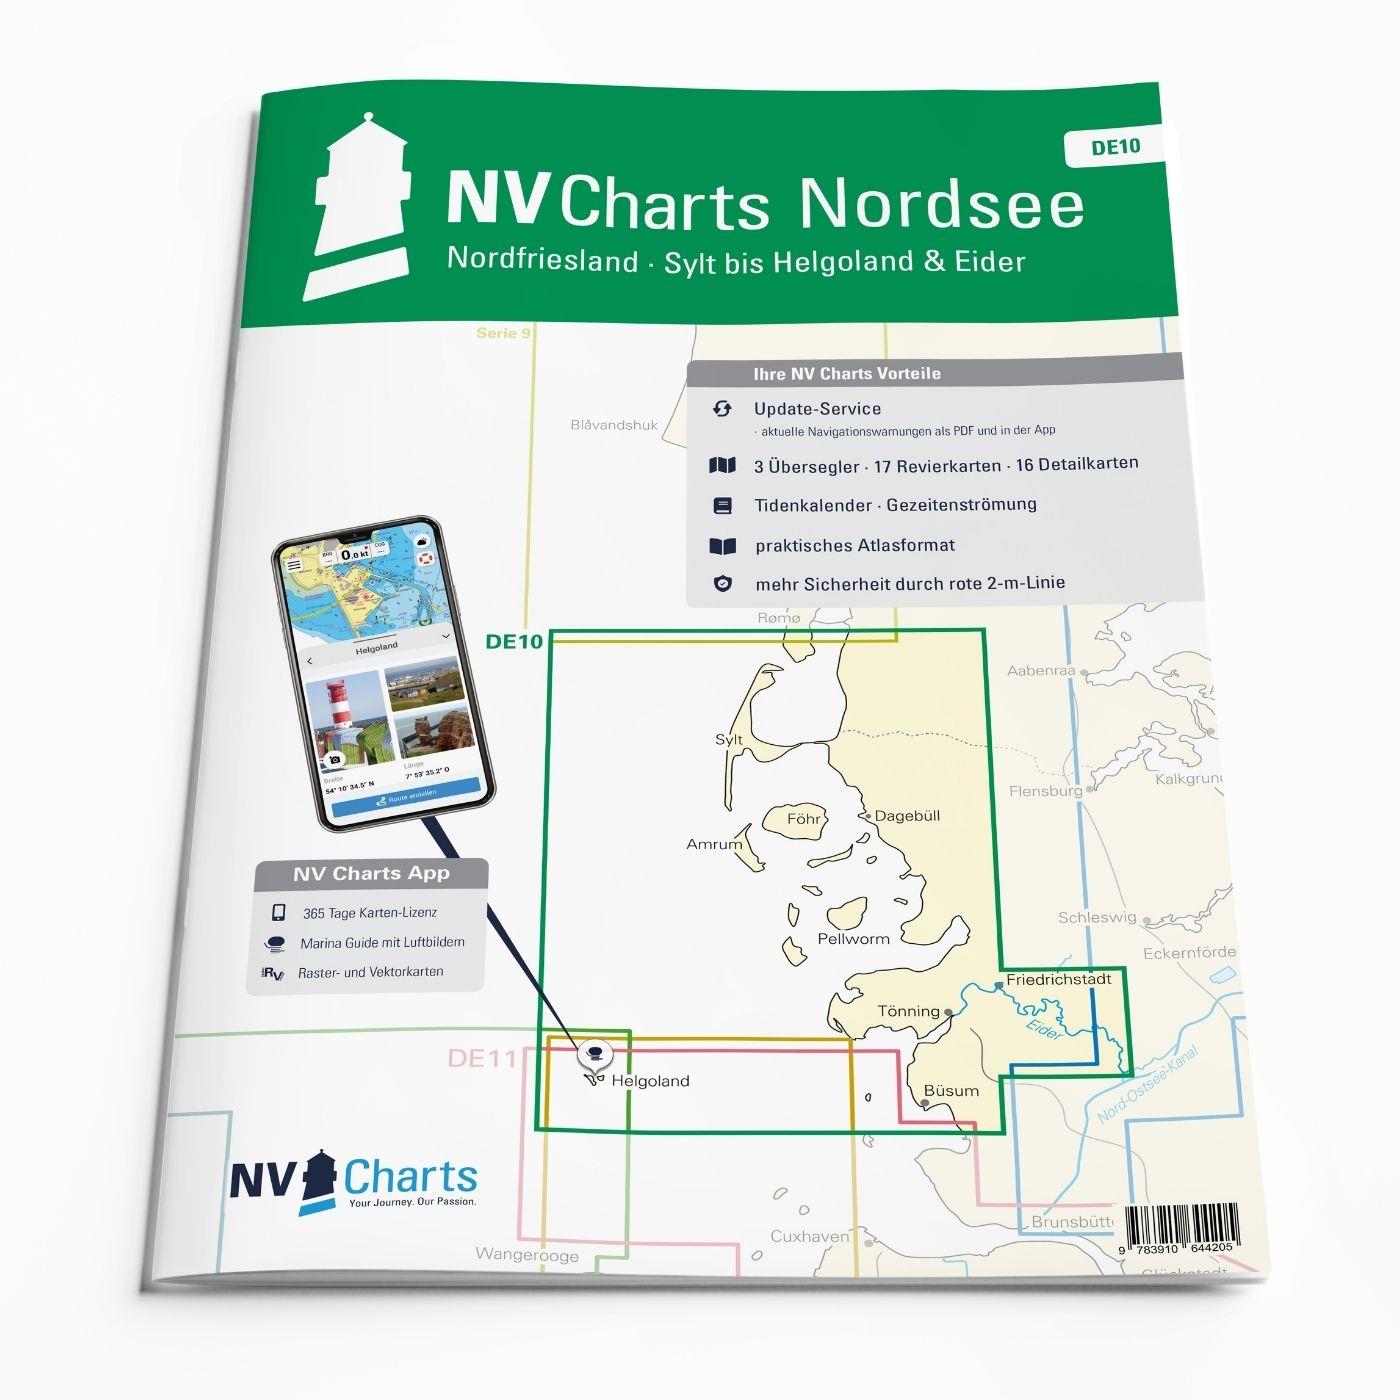 Subscription - NV Charts Nordsee DE10 - Nordfriesland, Sylt bis Helgoland & Eider